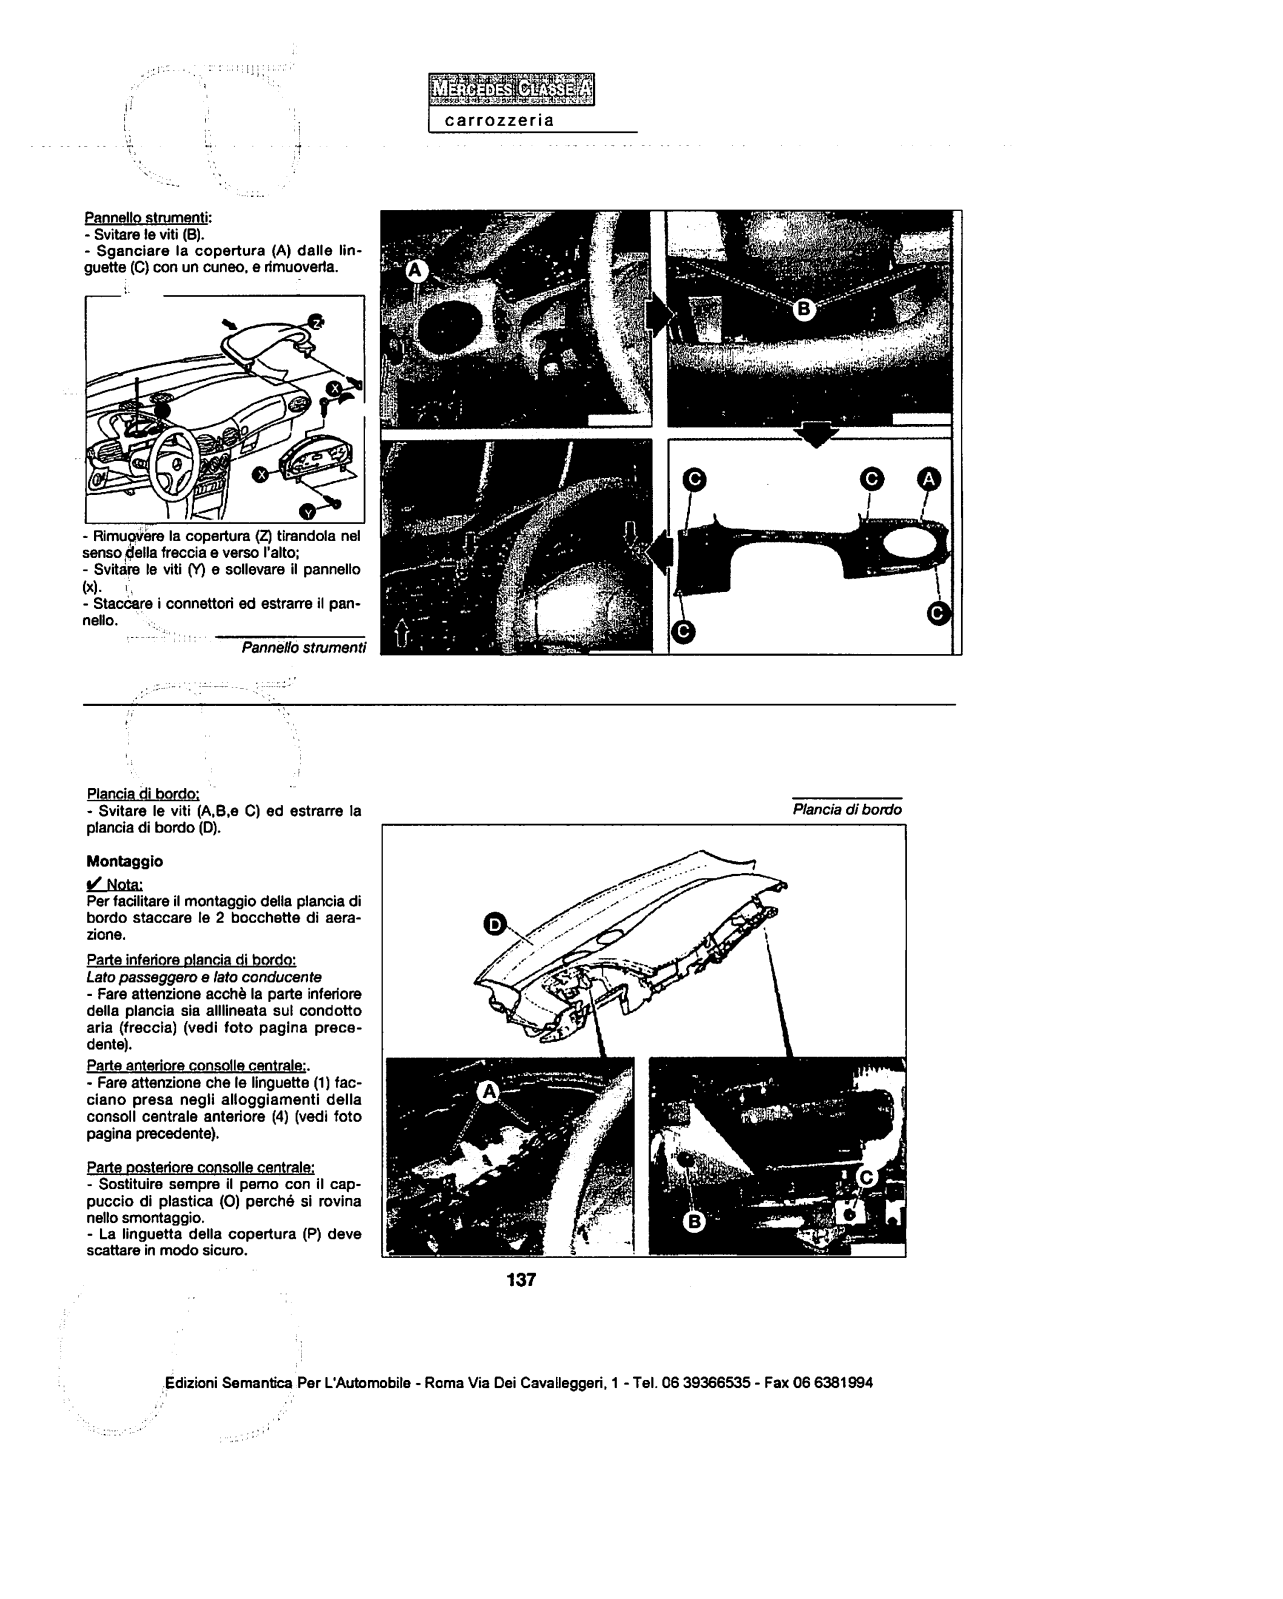 (W168): Manual técnico - tudo sobre - 1997 a 2004 - italiano 152fddv